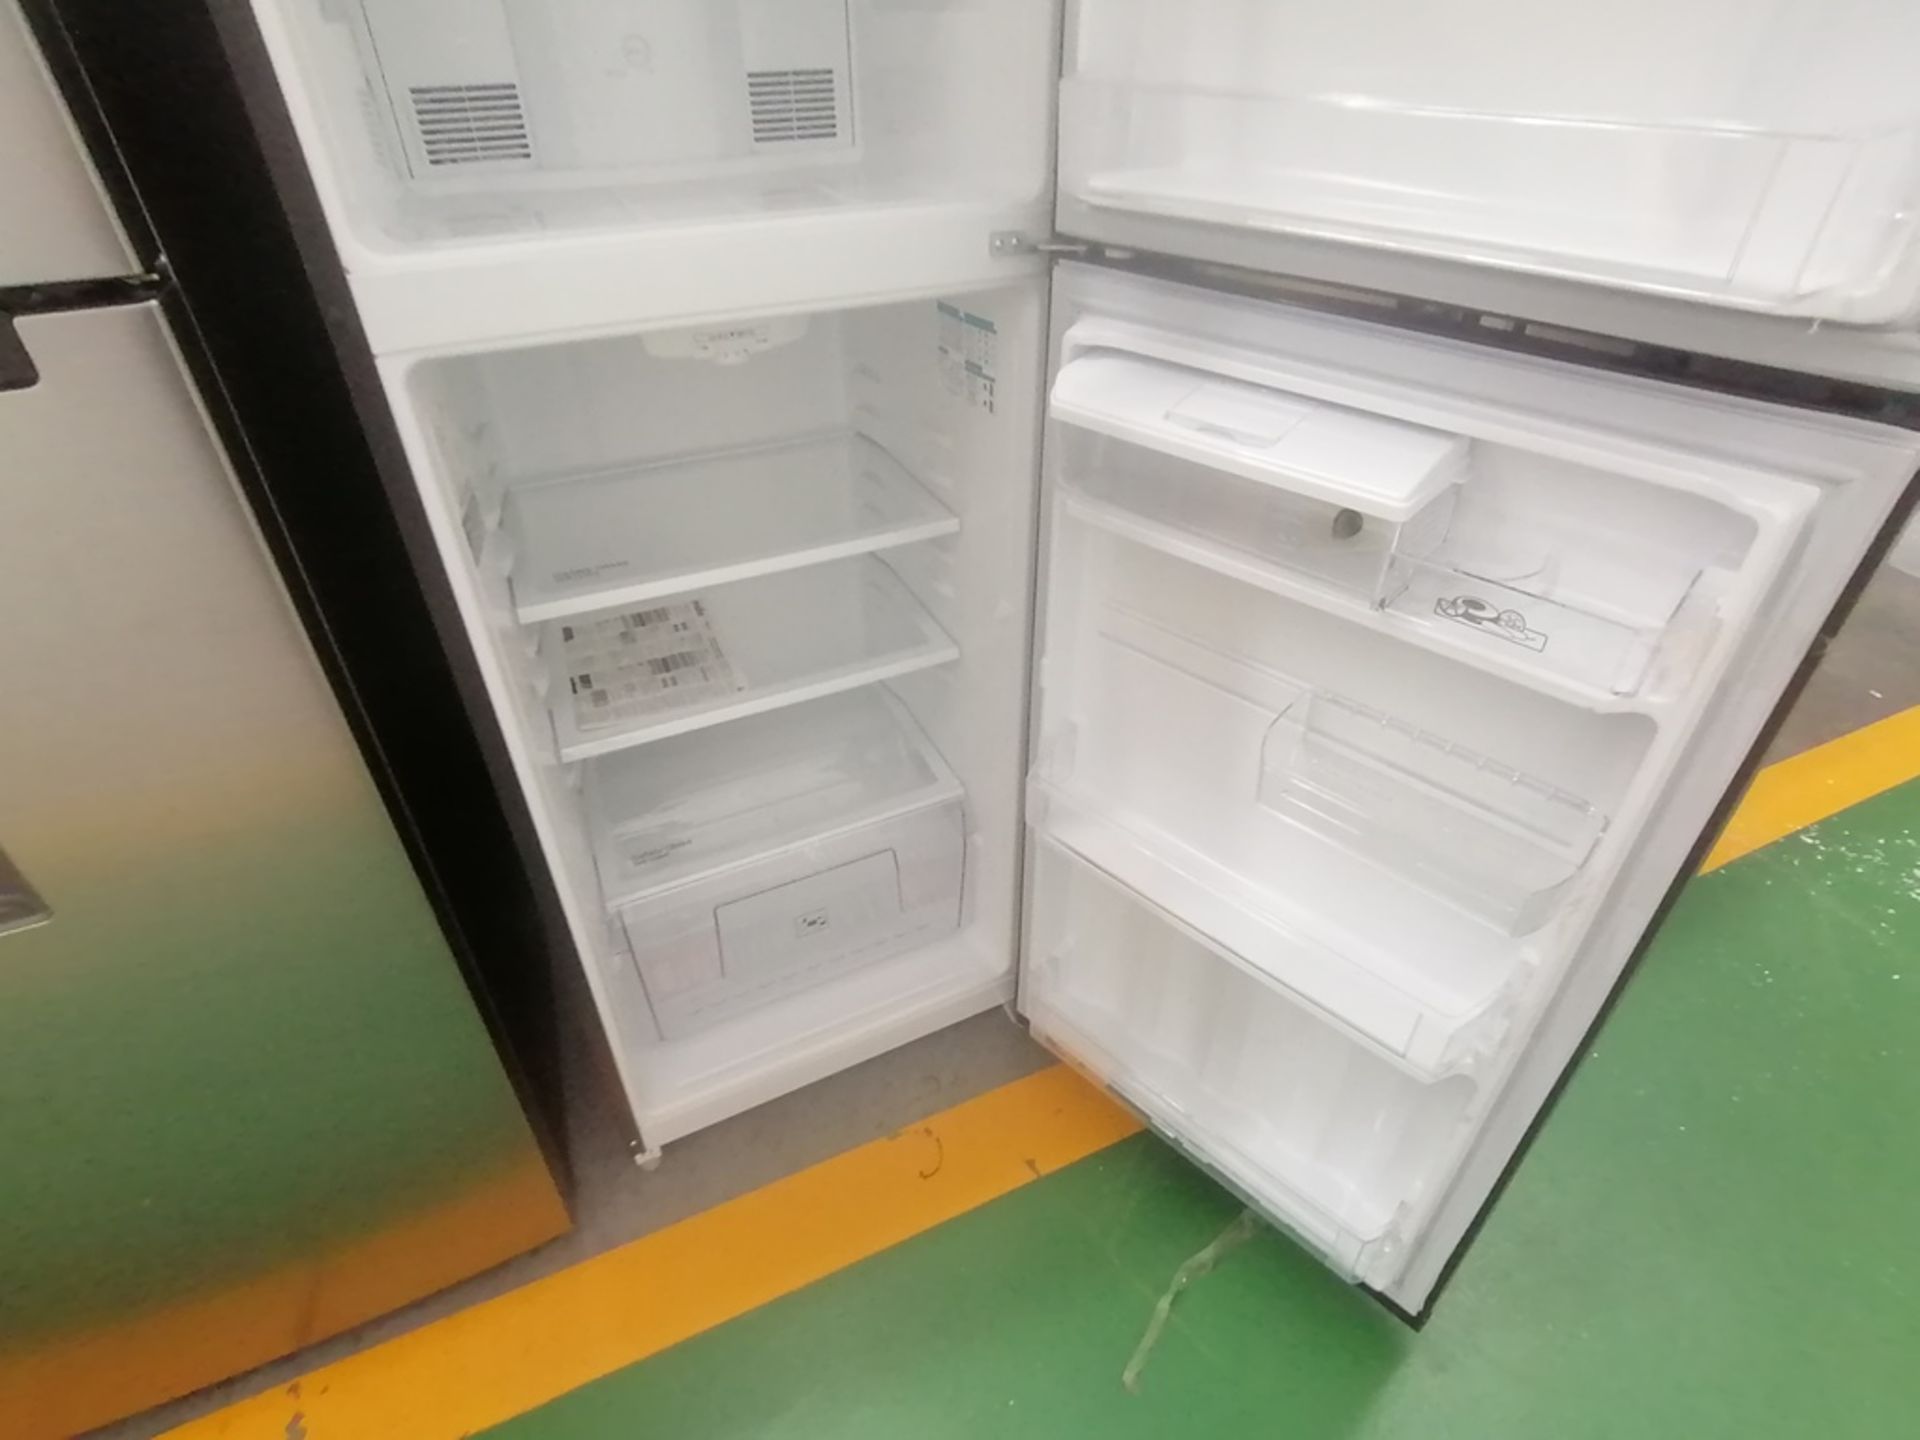 Lote de 2 refrigeradores incluye: 1 Refrigerador con dispensador de agua, Marca Mabe, Modelo RME360 - Image 10 of 15